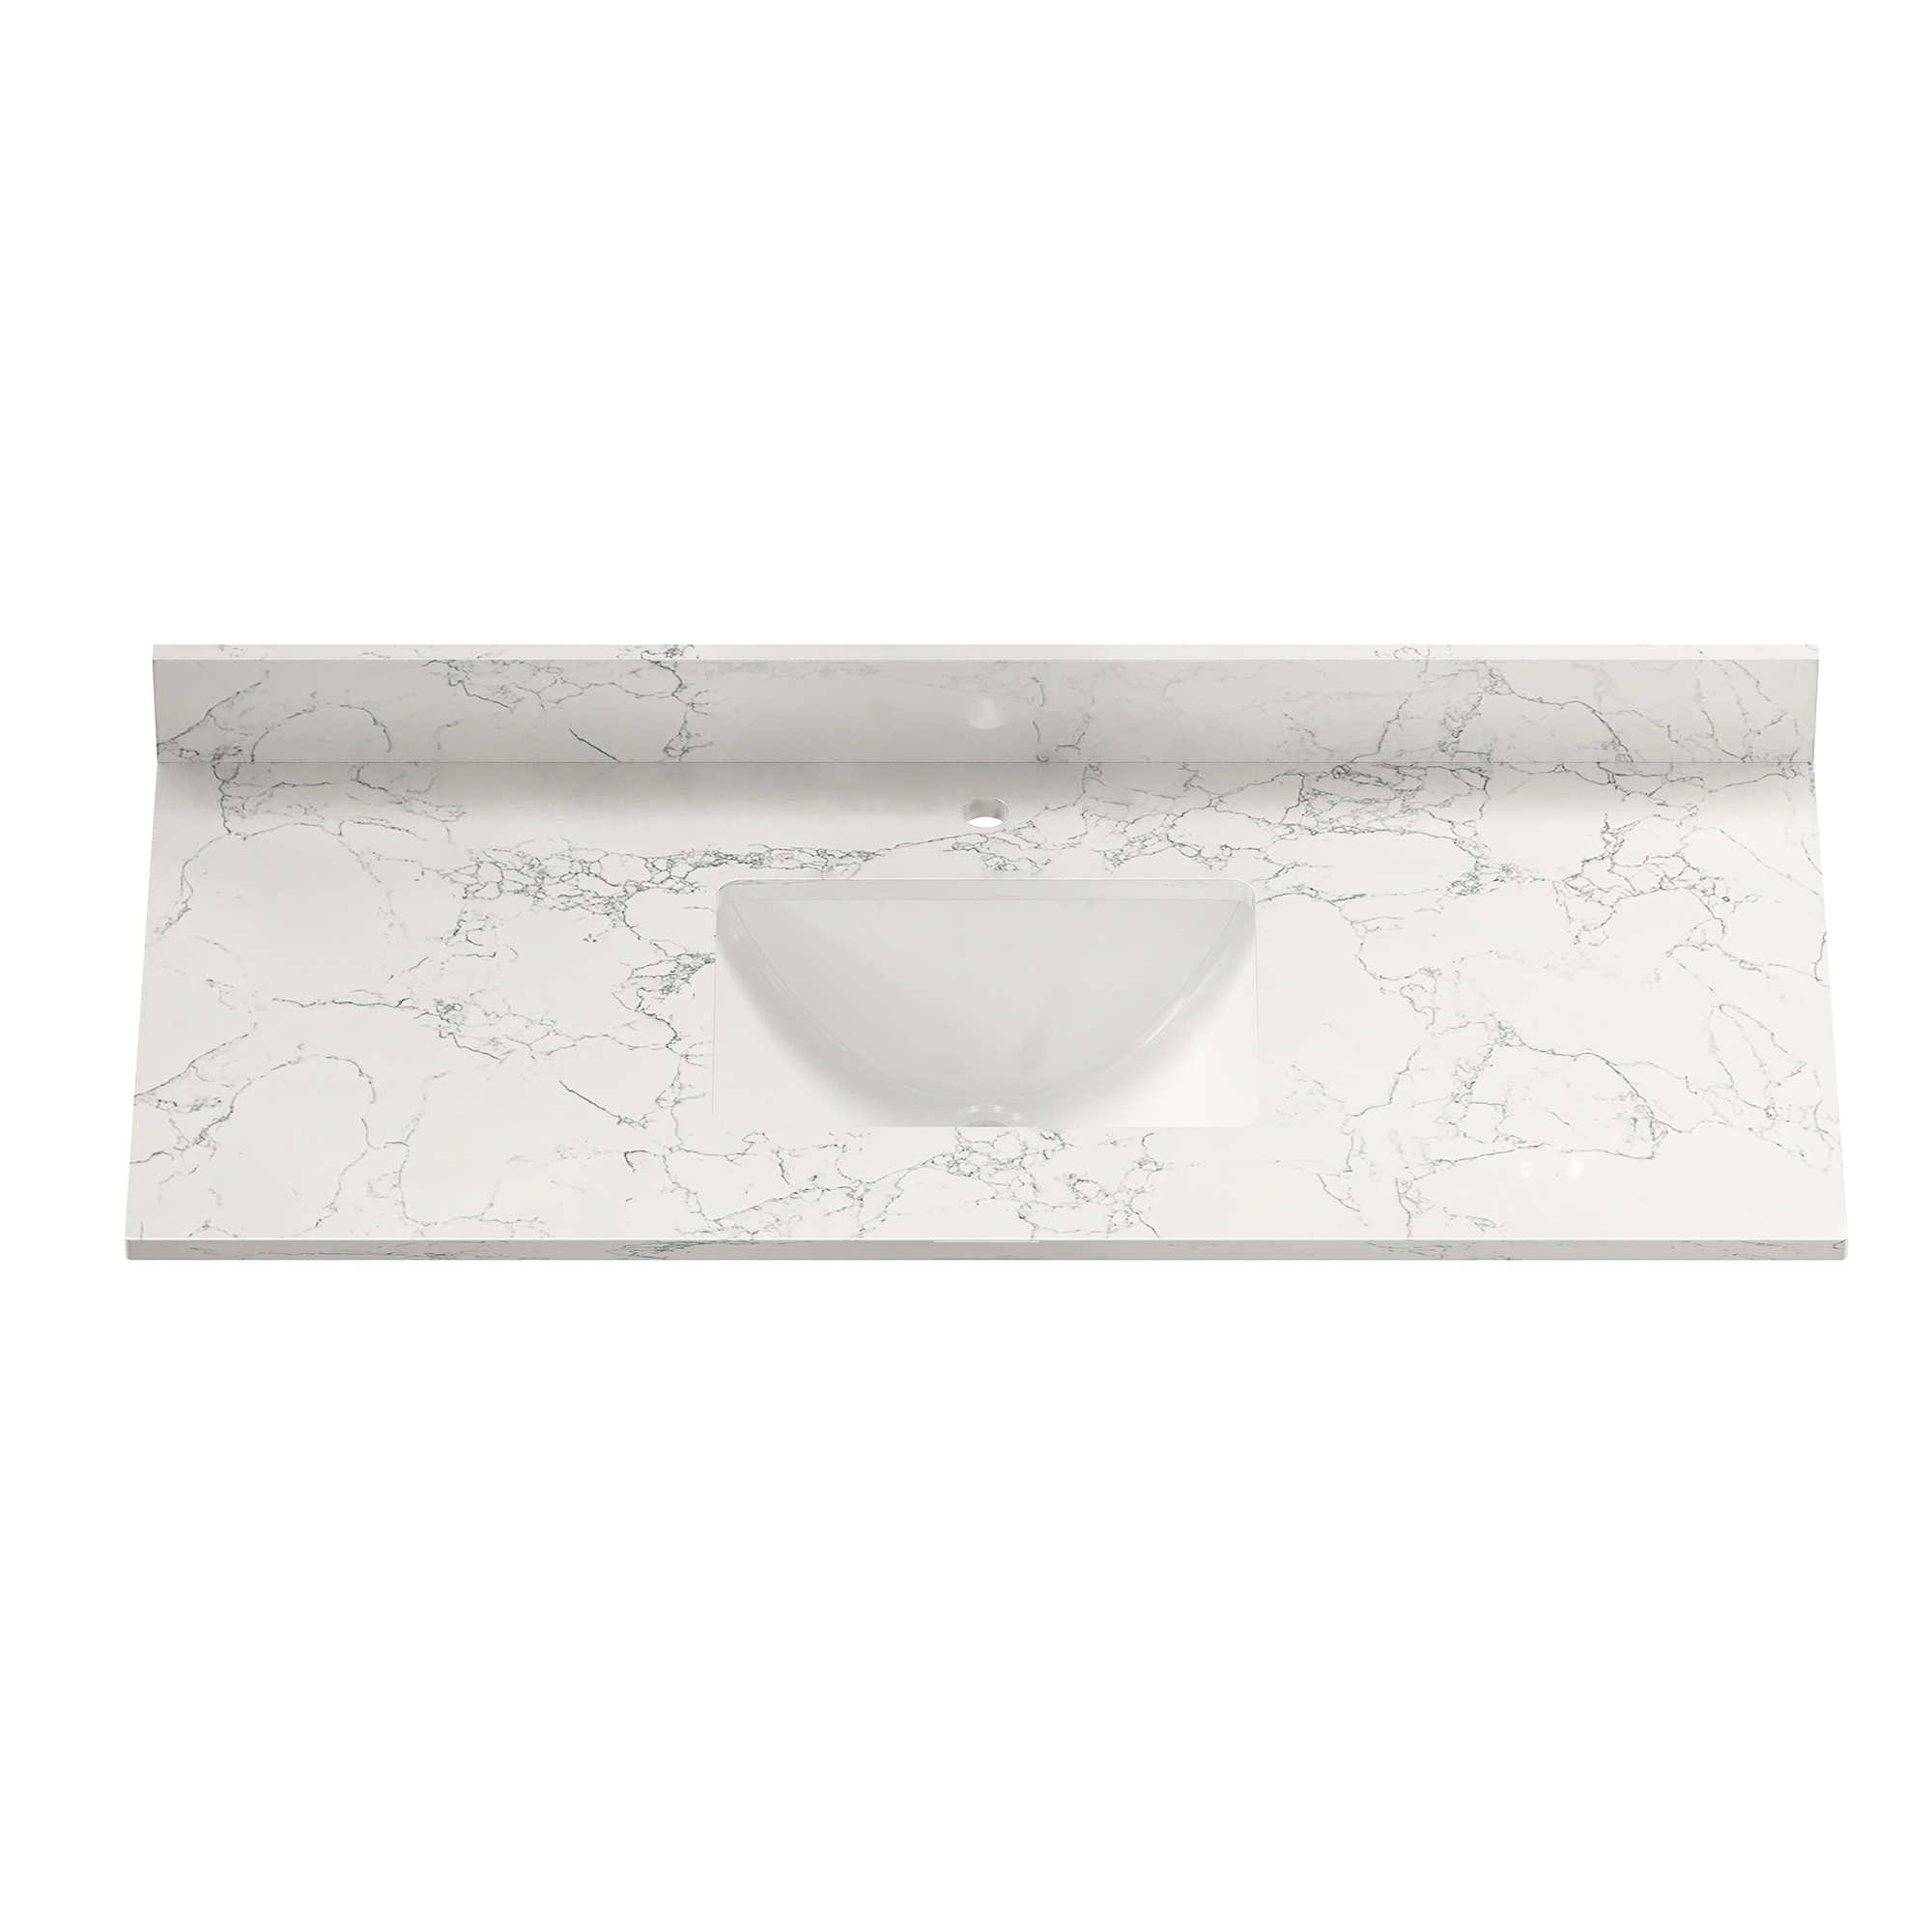 CASAINC 49" Carrara Jade/White Marble Single Sink Bathroom Vanity Top with 100mm High Backsplash, CUPC Certified